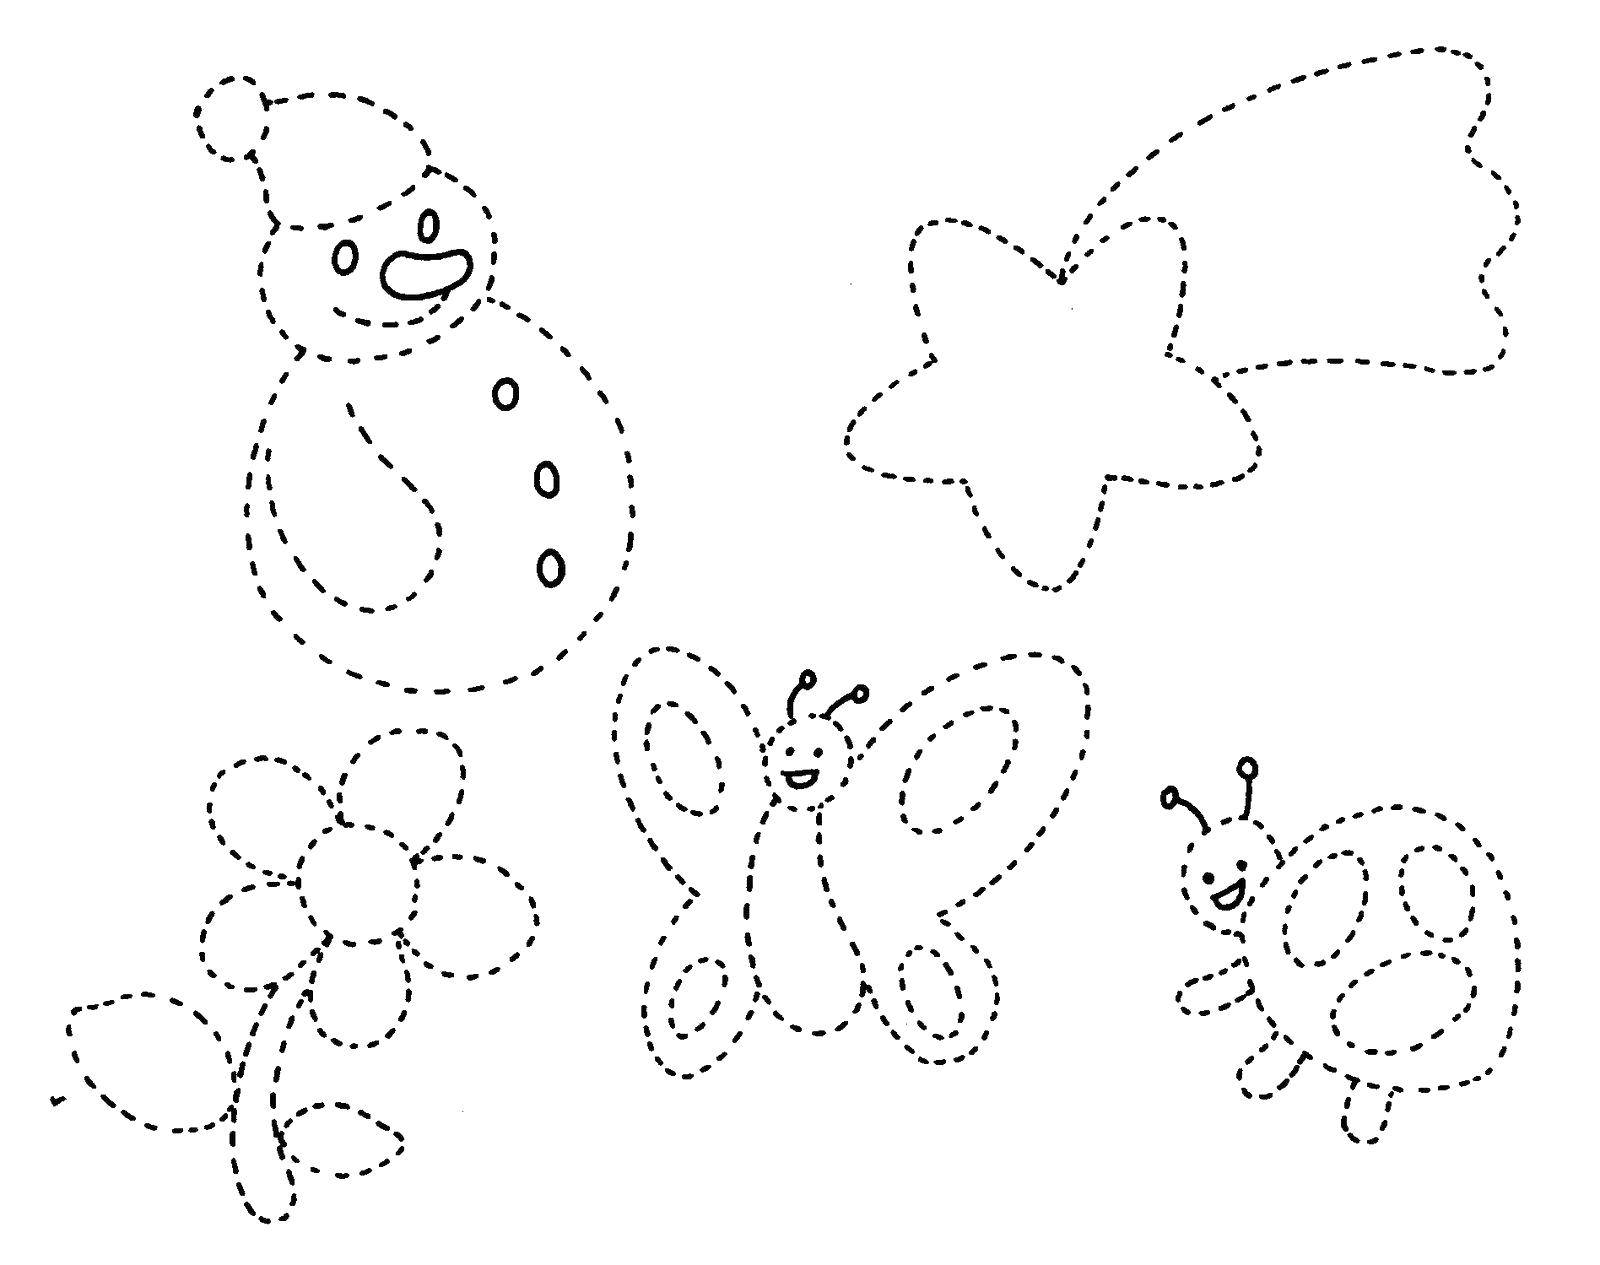 Coloring Обведи по контуру и раскрась снеговика, цветок, комету, бабочку и божью коровку. Category дорисуй по образцу. Tags:  Снеговик, цветок, бабочка, комета, божья коровк.